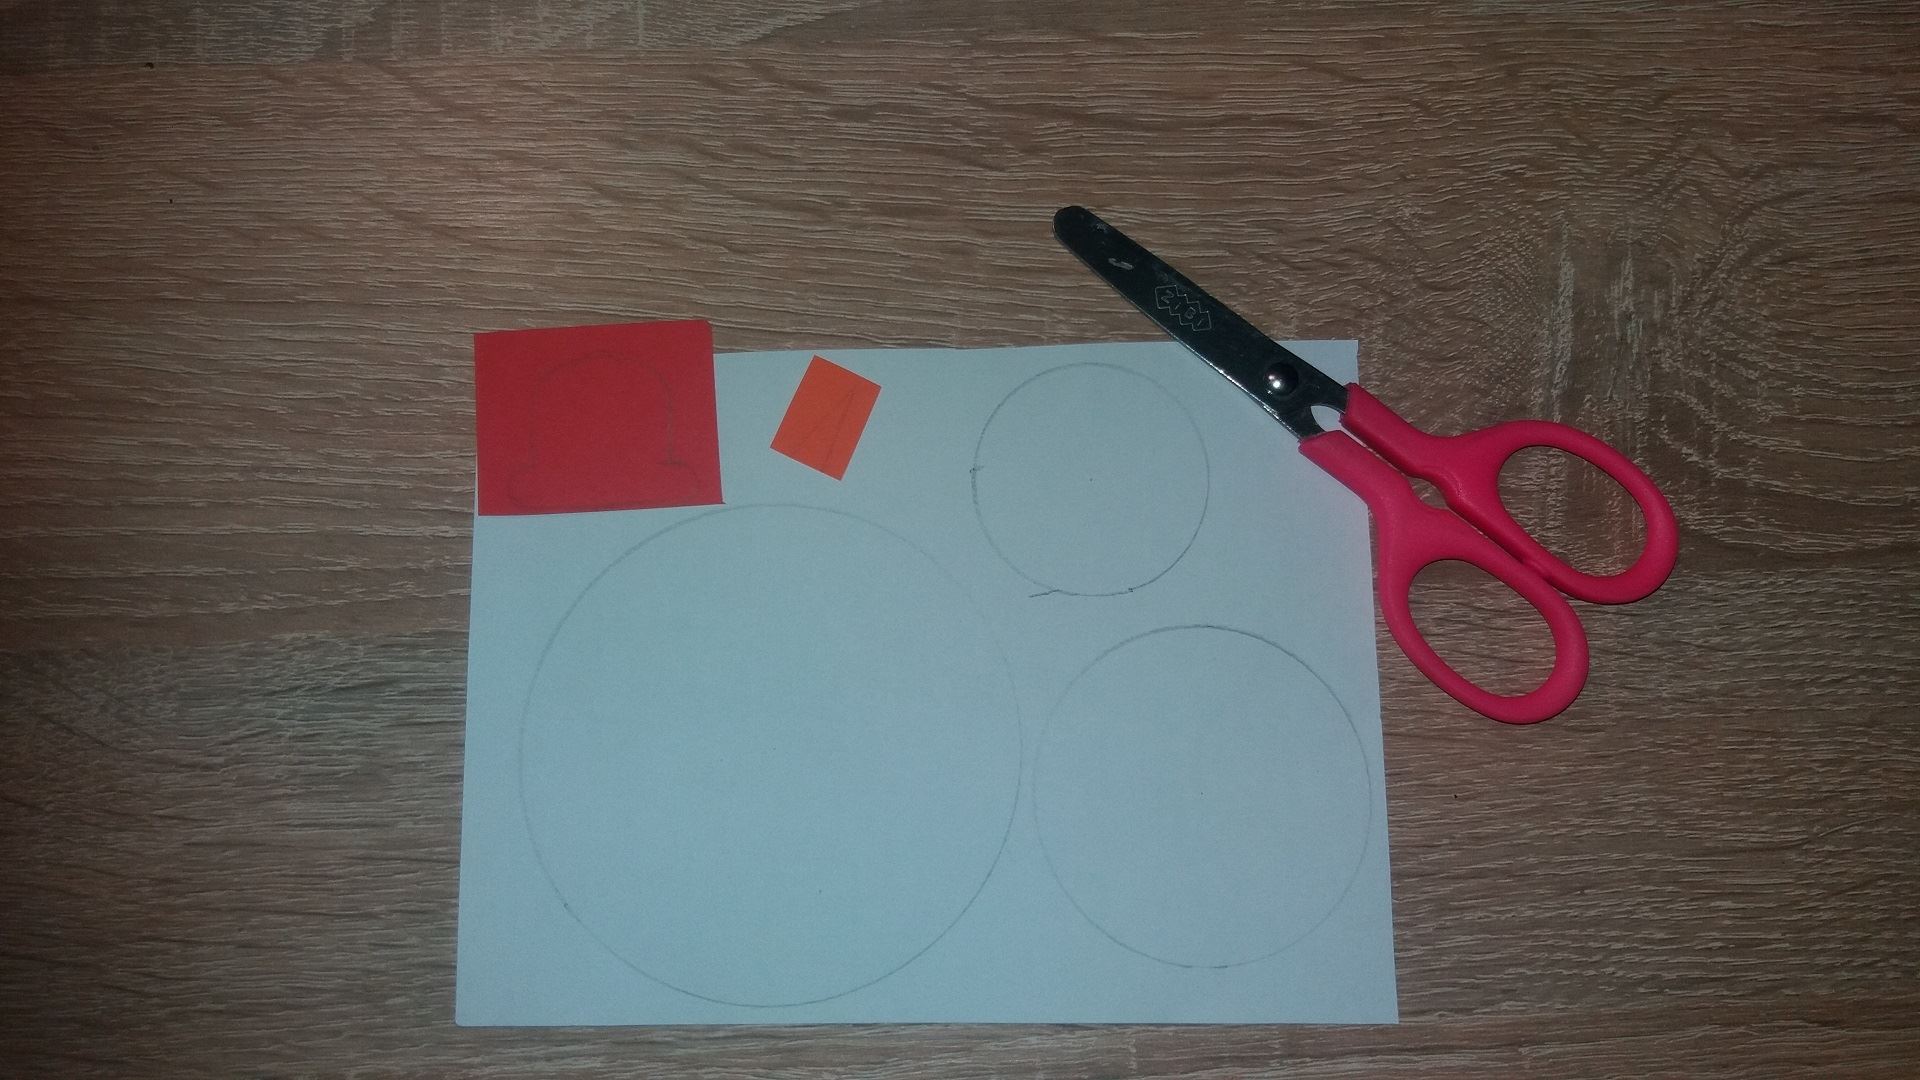 Сначала мы нарисуем 3 ровных круга на белом листе бумаги: большой, средний и маленький. Затем мы рисуем небольшую шляпку на красной бумаге и маленький треугольник на оранжевой бумаге. Вырезаем, что нарисовали 